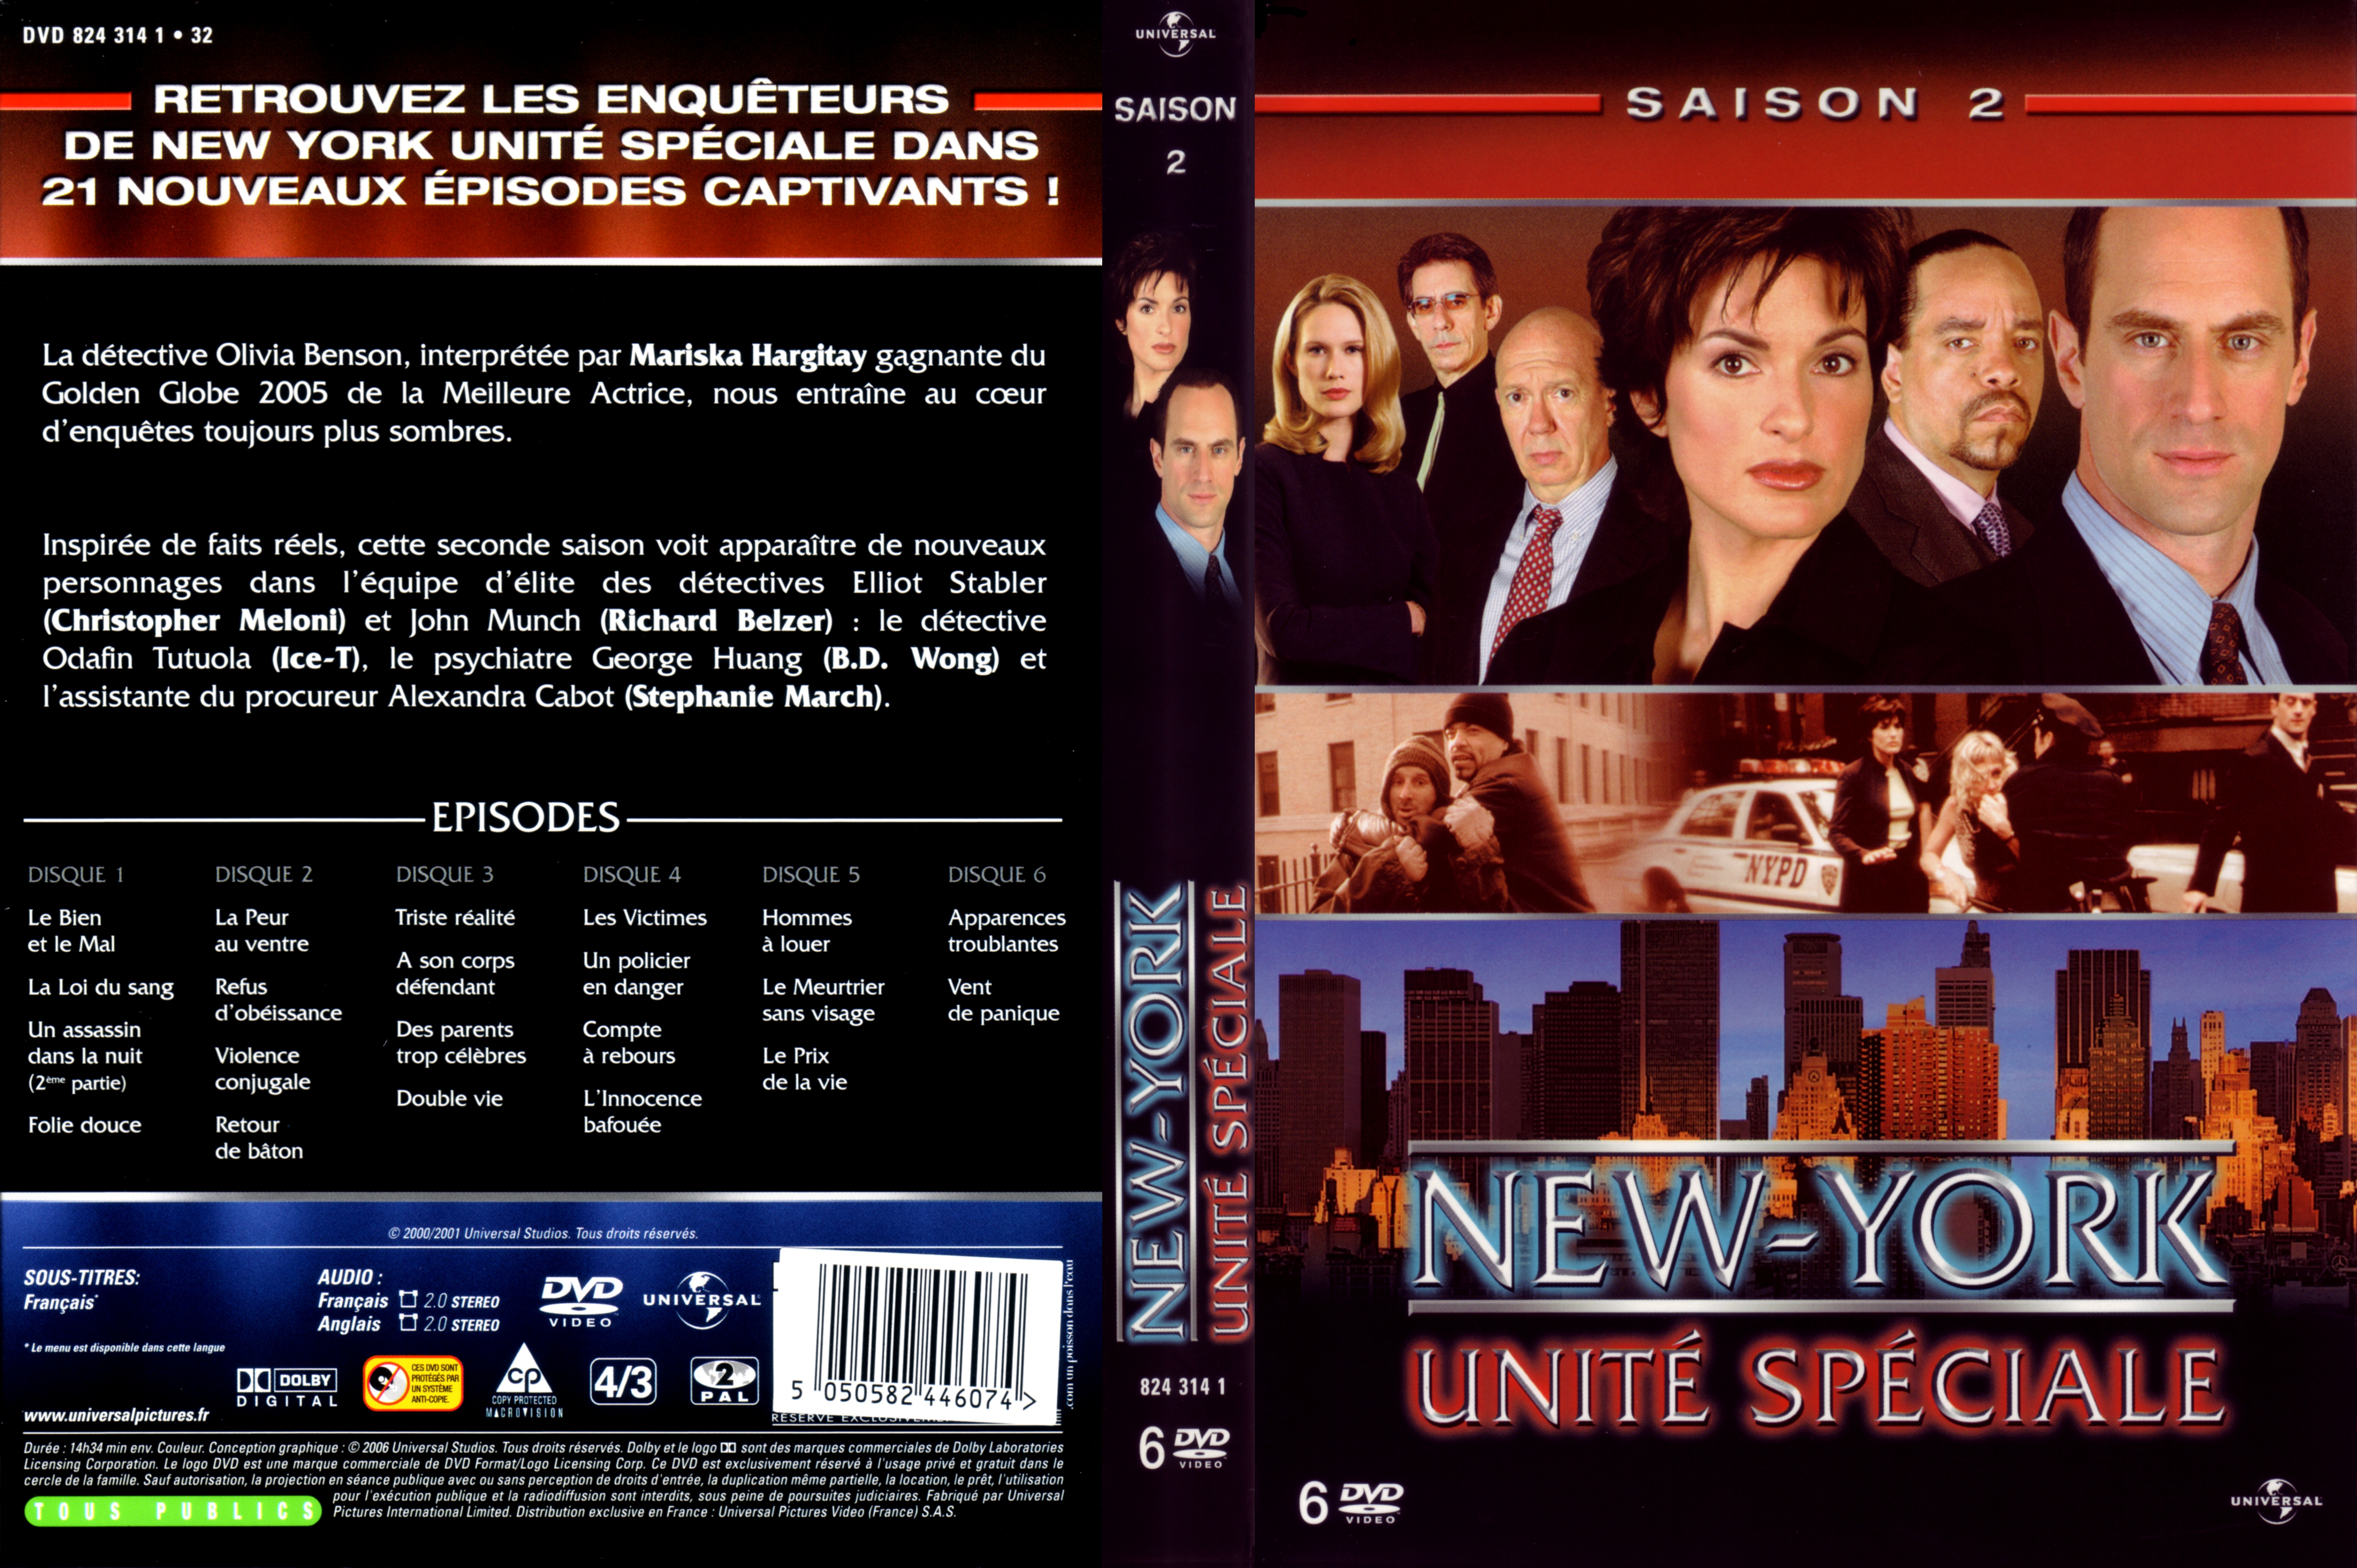 Jaquette DVD New York unit spciale saison 2 COFFRET